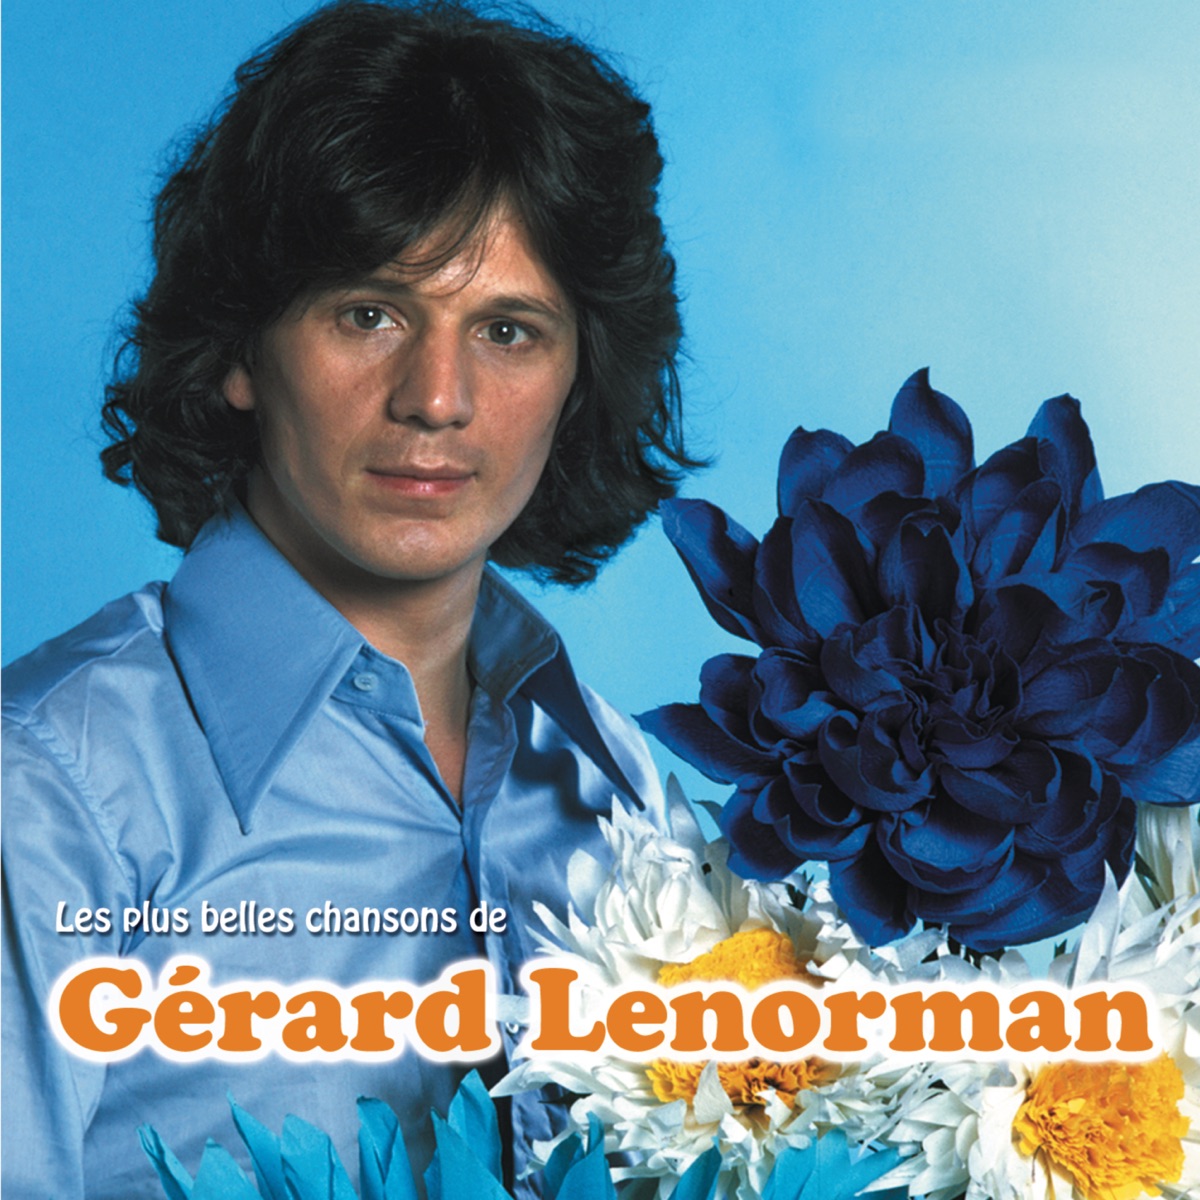 ‎Les plus belles chansons de Gérard Lenorman par Gérard Lenorman sur Apple  Music